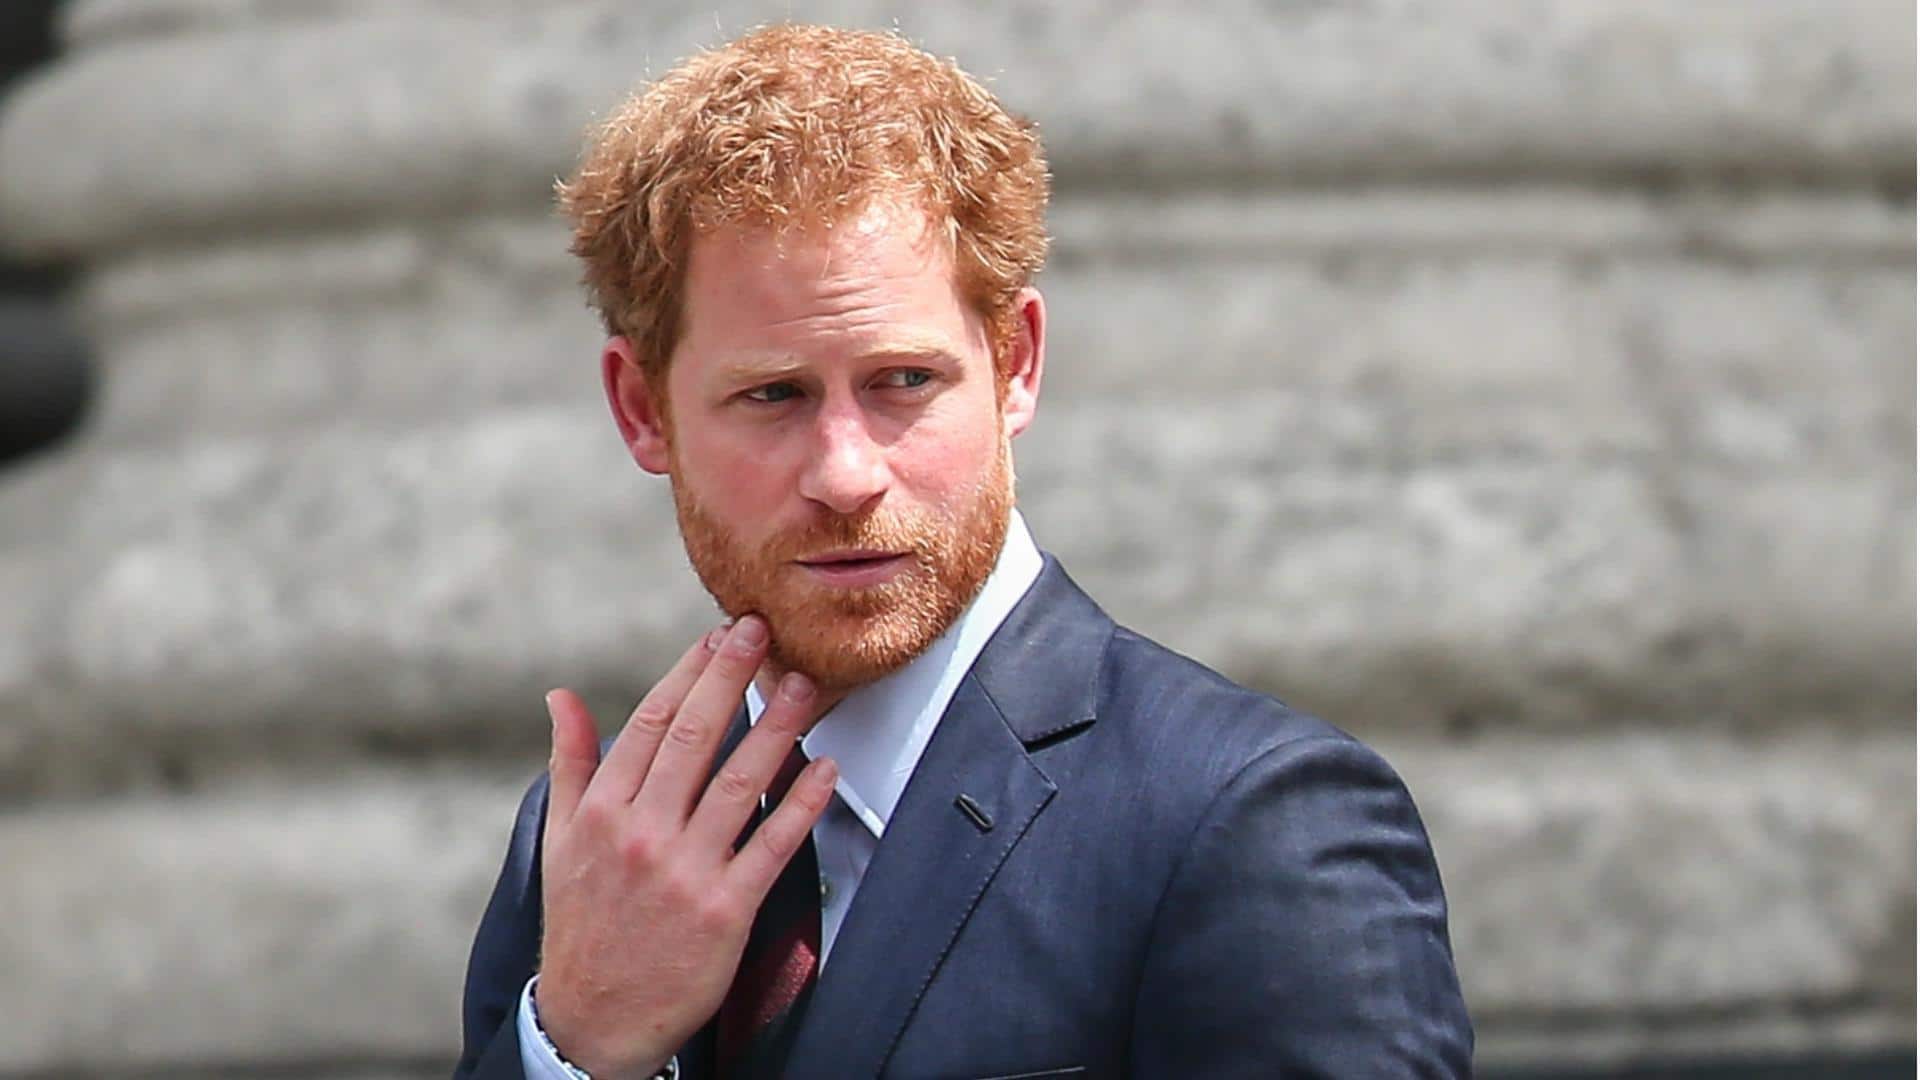 Phone hacking trial: Prince Harry dismisses James Hewitt rumors